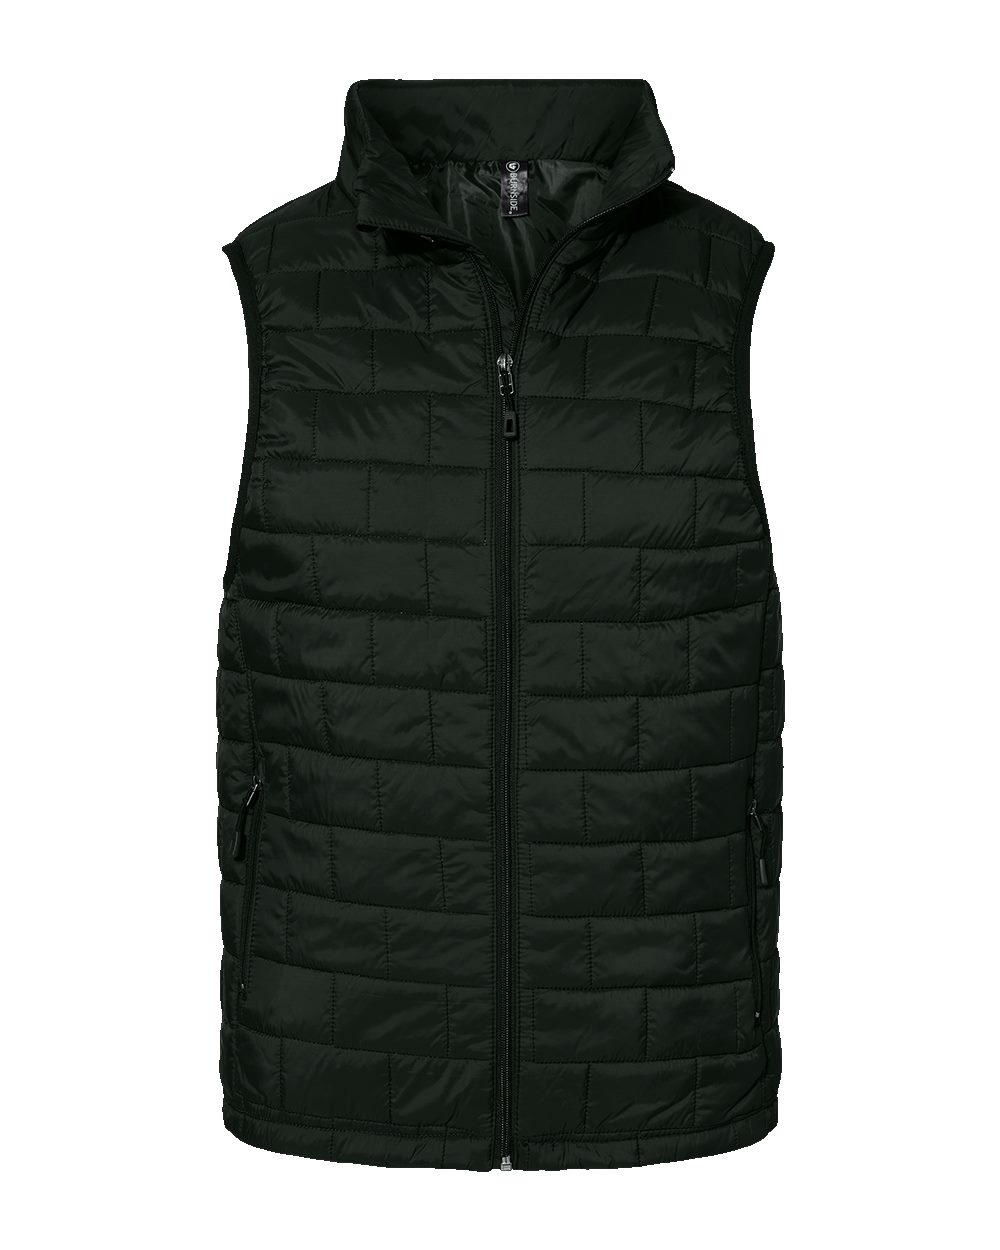 Burnside 8703 - Elemental Puffer Vest